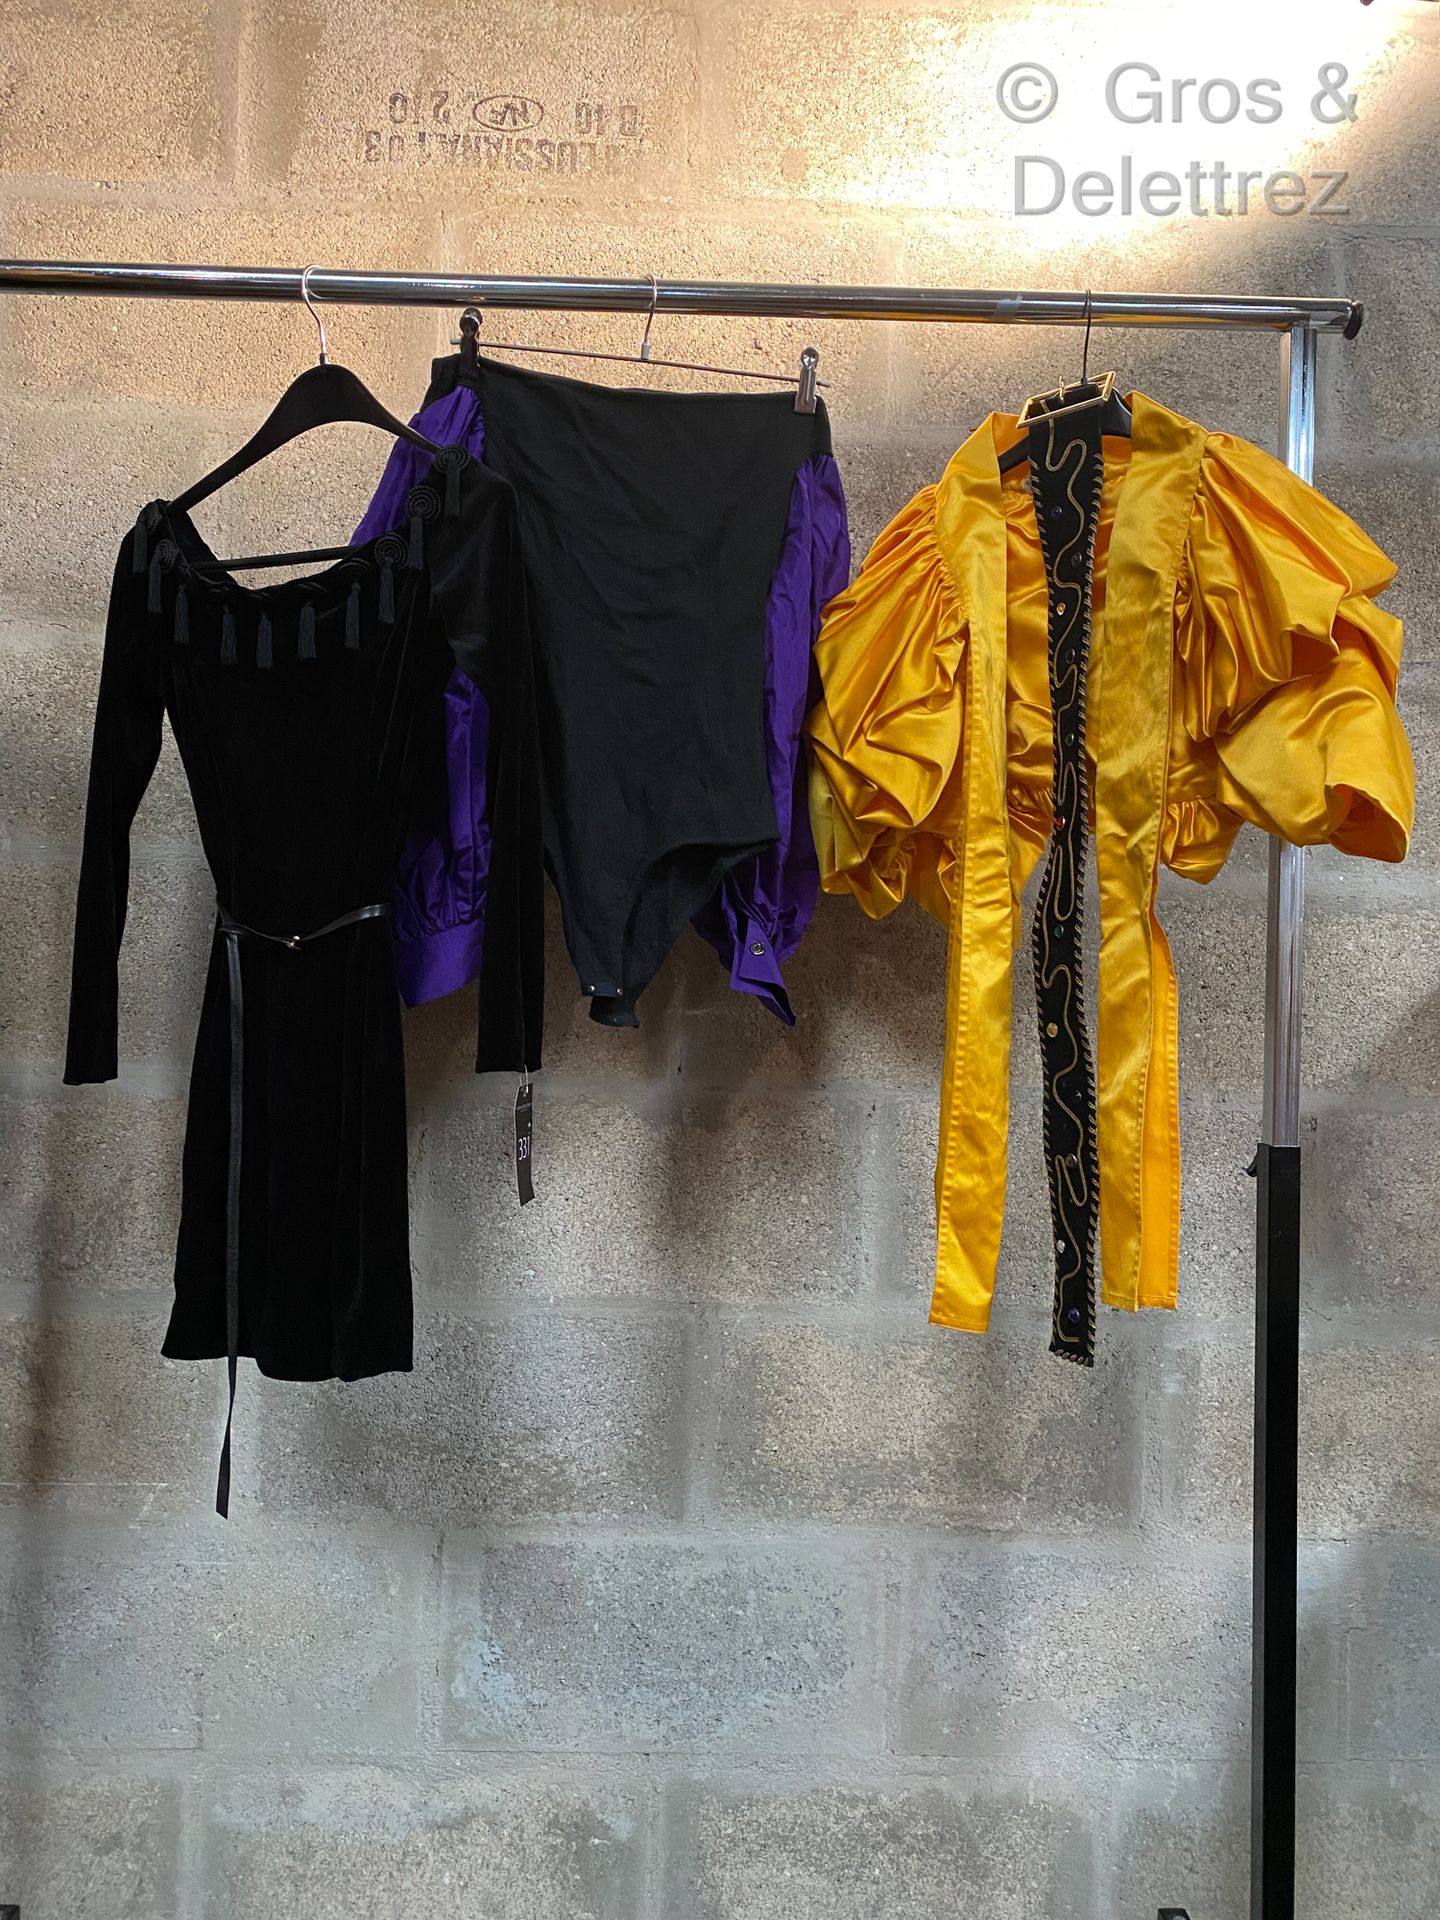 Null ANGELO TARLAZZI的拍品由一件黑色天鹅绒连衣裙，一件黑色羊毛和紫色丝绸连衣裙，一件黄色晚装长裙，以及一条黑色麂皮和金色皮革腰带，上面有多色&hellip;